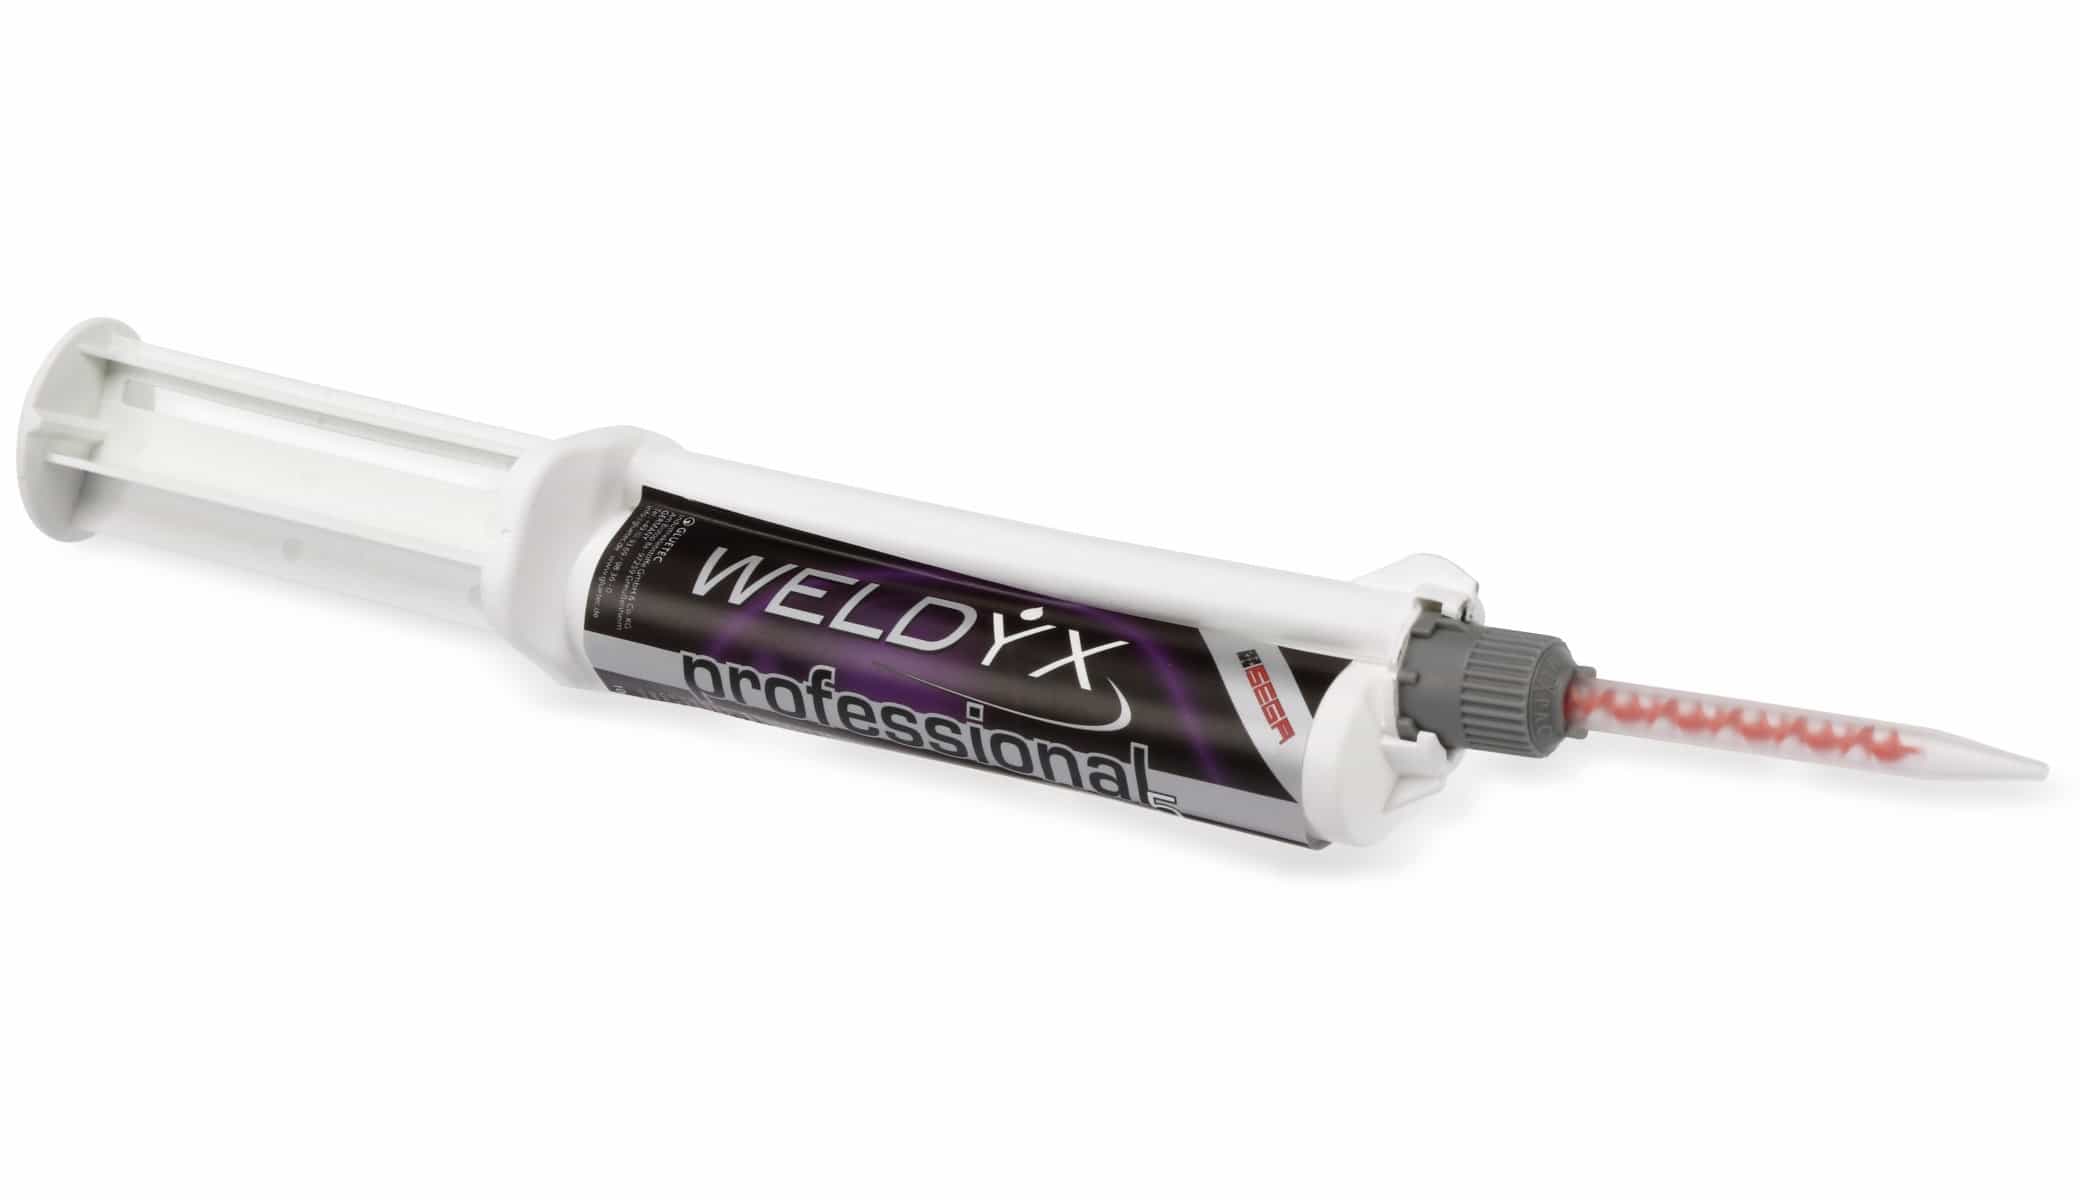 WIKO Hochleistungs-Klebstoff WELDYX Professional 5, 10 g